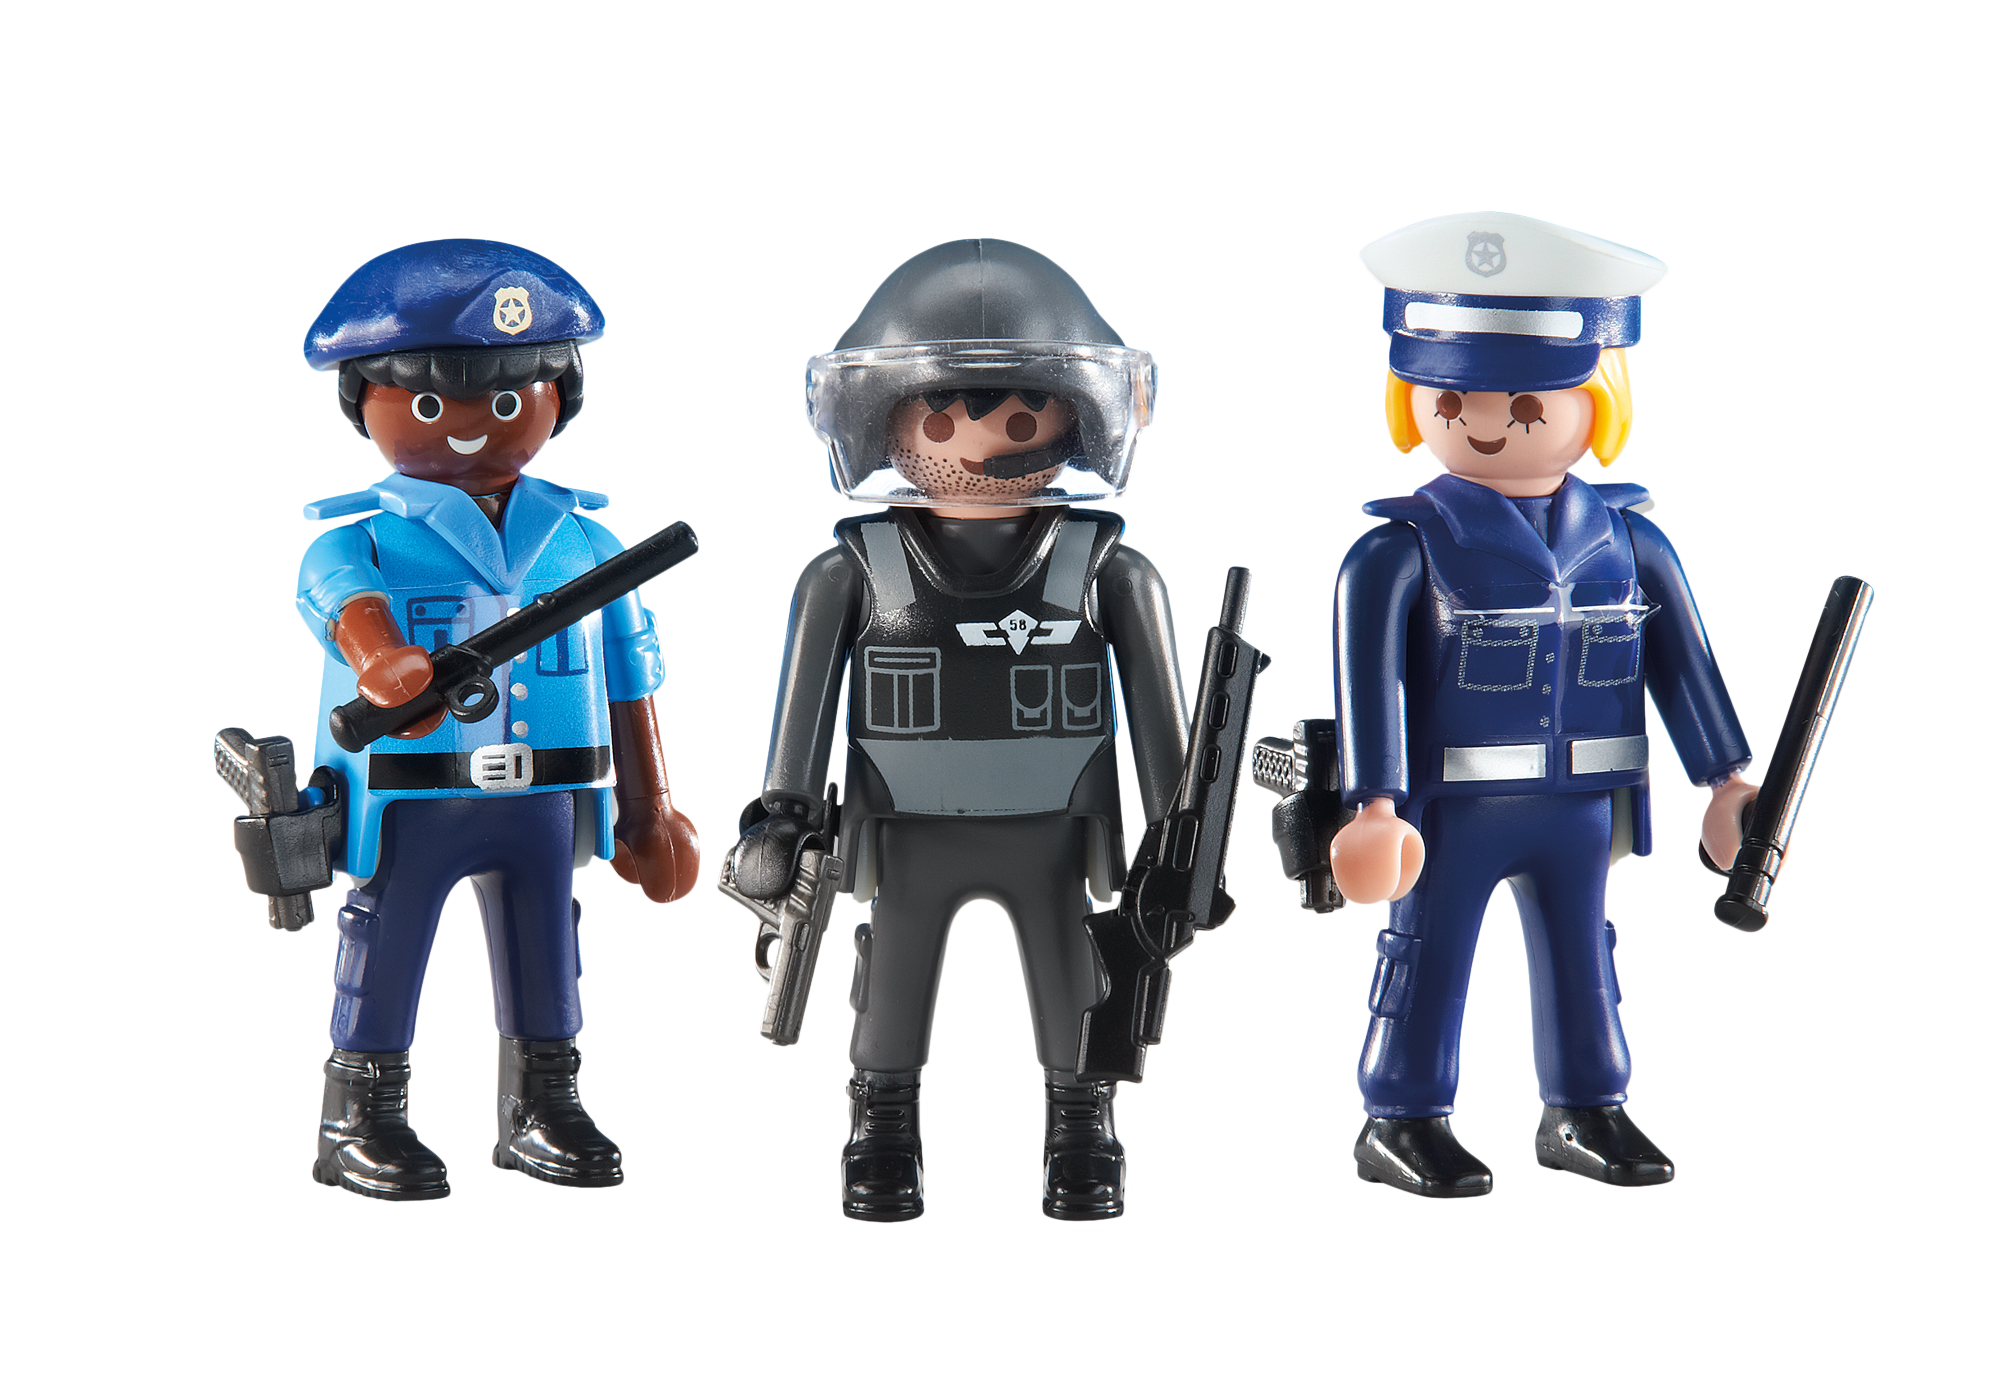 Игрушка полицейская купить. Полиция Плеймобил Плеймобил. Игрушки Playmobil Police. Playmobil 5615 Police.